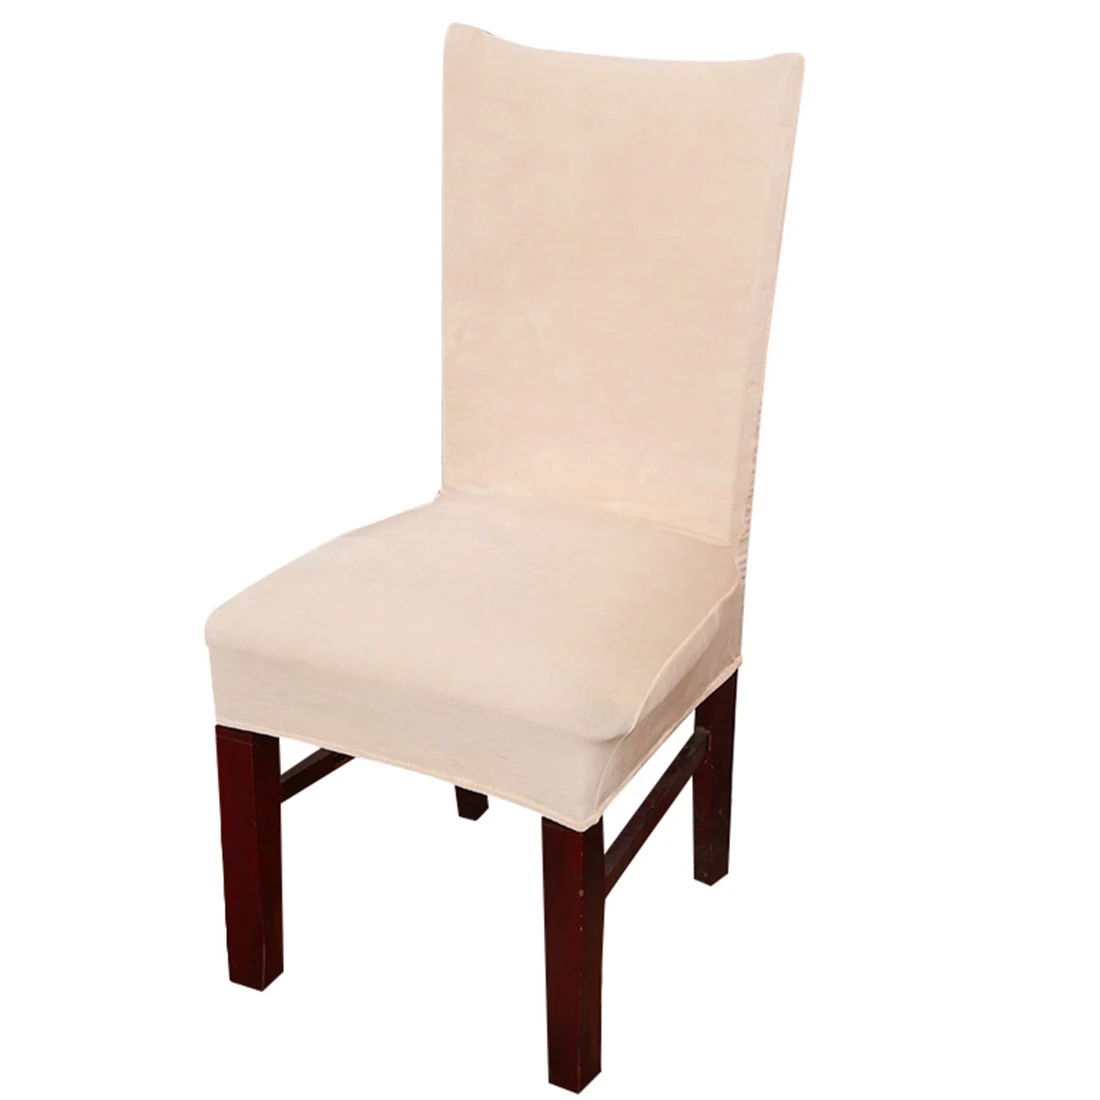 2 шт./лот чехлы на кресла стрейч для столовой протектор утолщенный съемный чехол для стула чехол для сиденья для дома Свадебные товары для стула - Цвет: Style 11